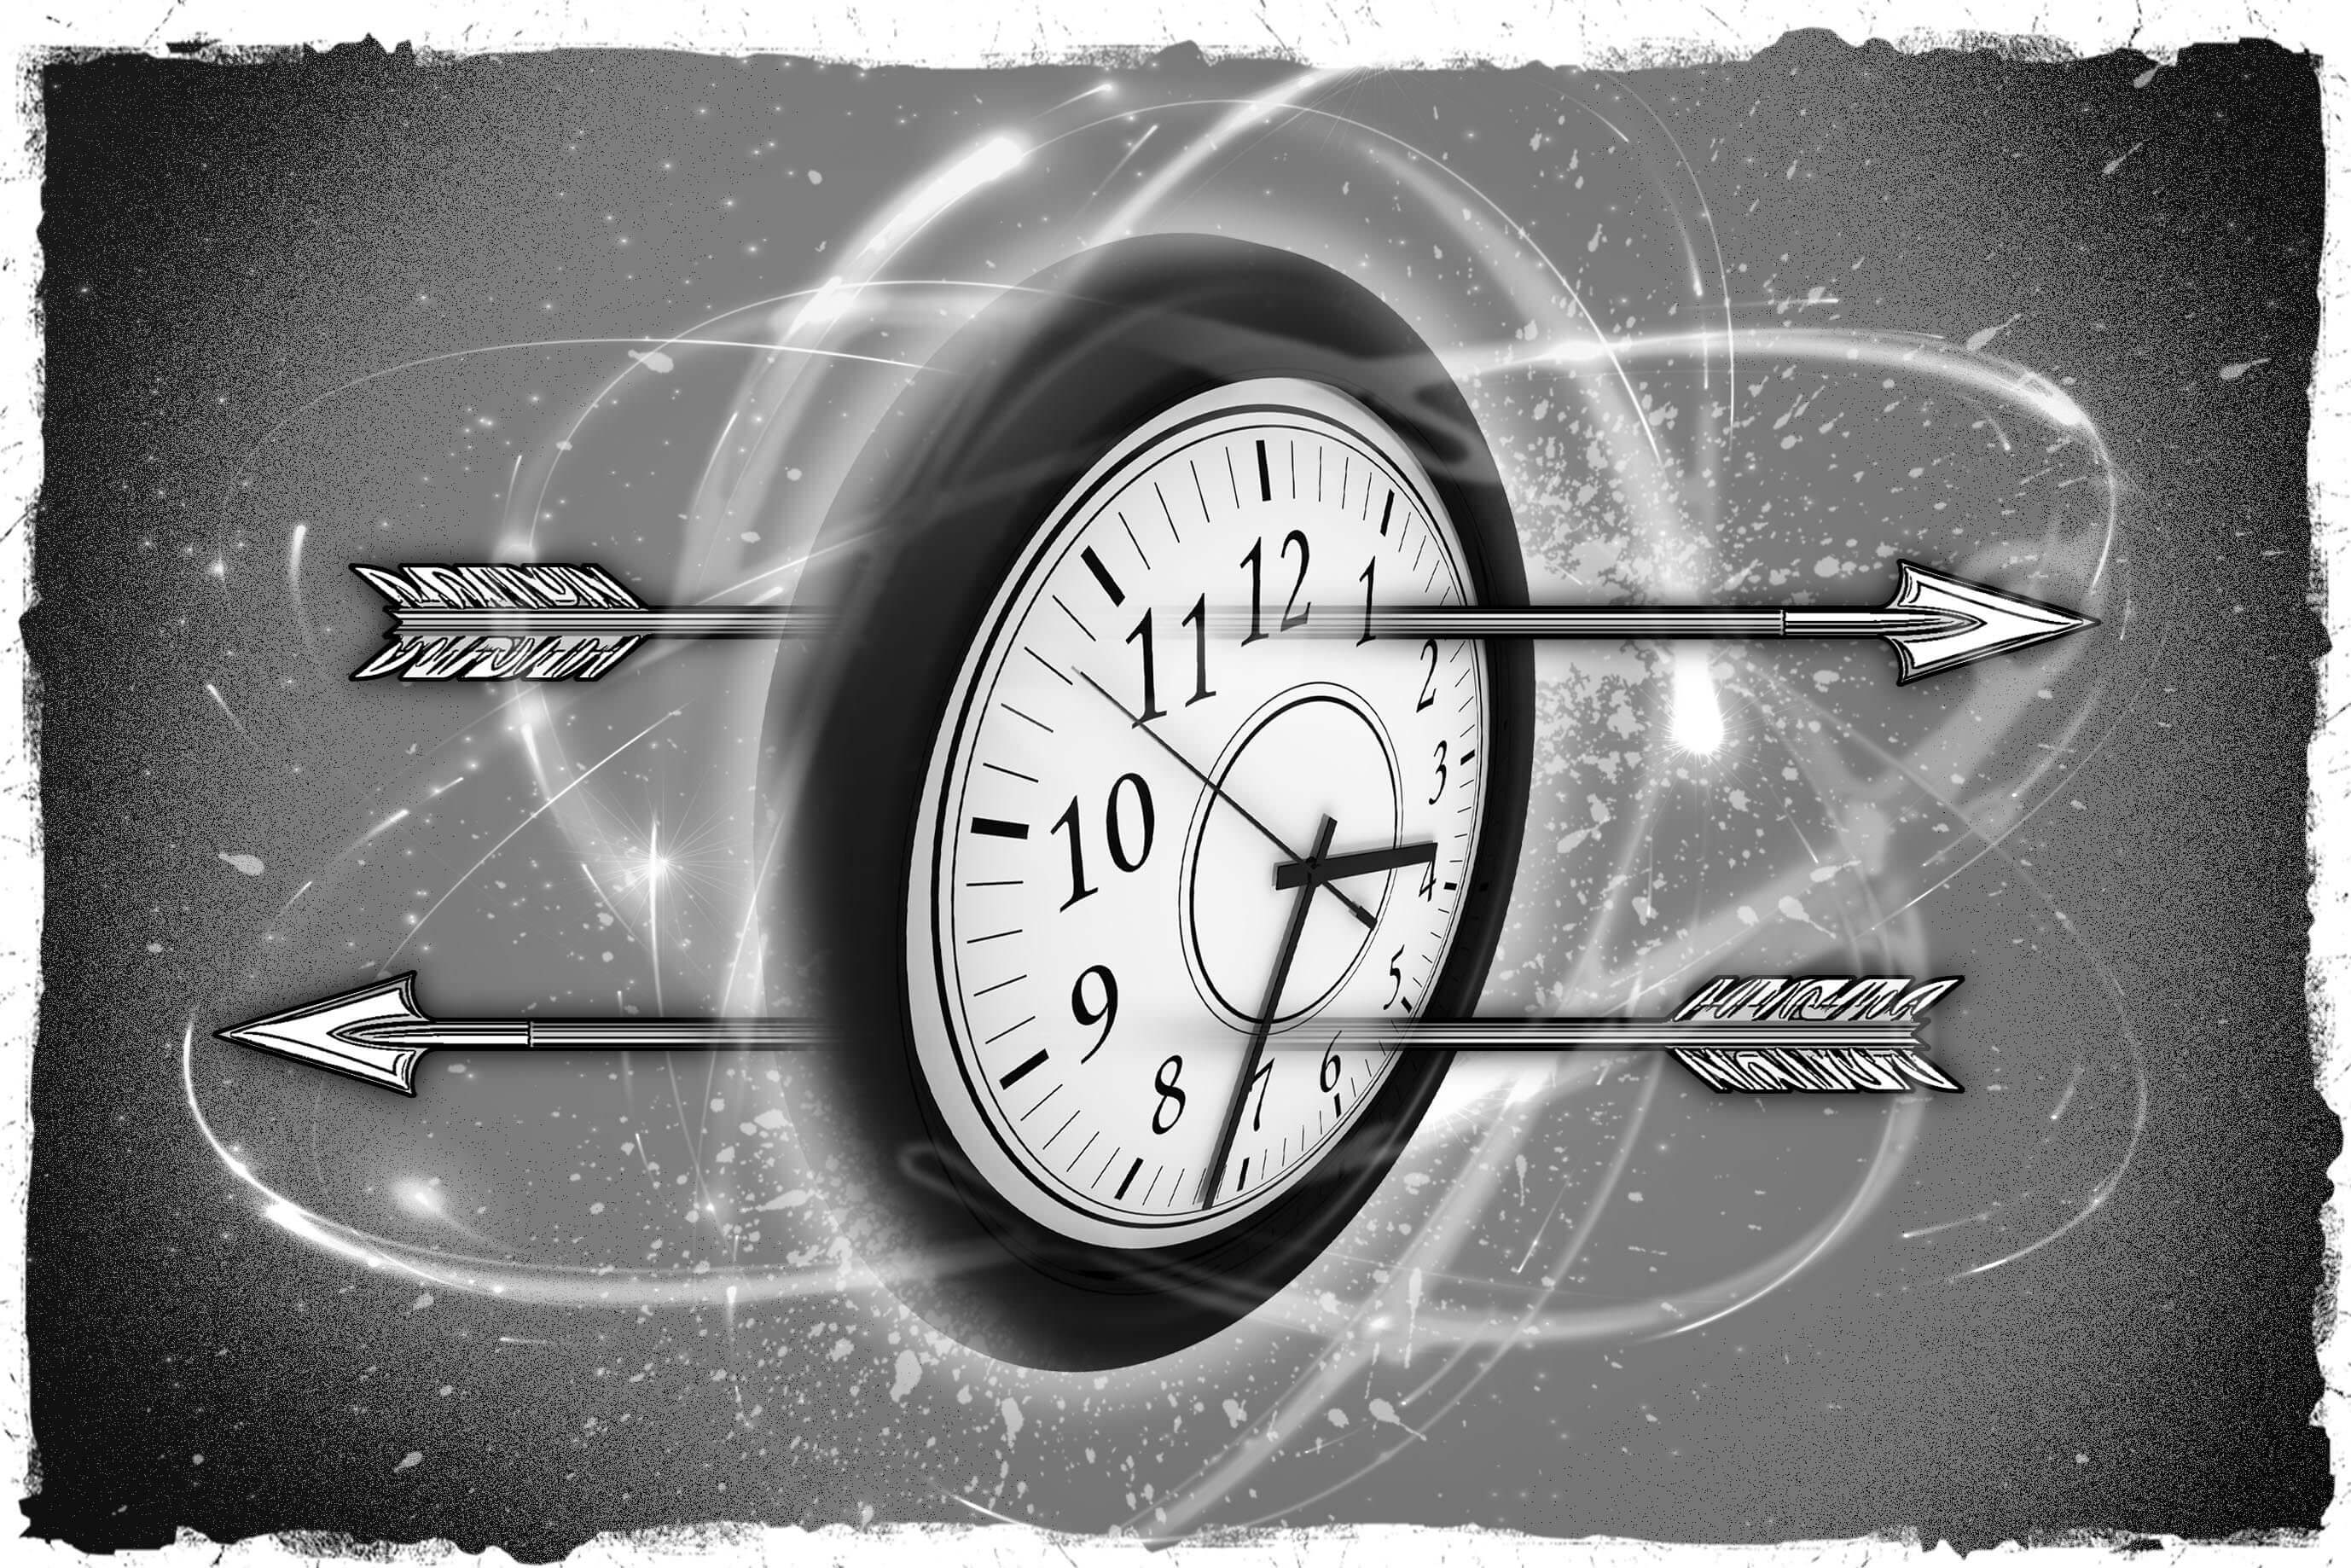 what time is it lt;pgt;До начала ХХ столетия считалось, что время - есть величина абсолютная. Но после того, как Альберт Эйнштейн опубликовал общую теорию относительности (ОТО), стало понятно, что время - понятие более субъективное и имеет отношение к наблюдателю, который его измеряет. И все же, многие продолжали трактовать время так, словно это прямая железнодорожная линия, двигаться по которой можно только вперед или назад. Но что, если эта железнодорожная линия ветвится или вовсе имеет окружные пути, двигаясь по которым поезд возвращается на станцию, которую уже проезжал? Иными словами, можно ли путешествовать в будущее или прошлое? Начиная со знаменитого романа Герберта Уэллса Машина времени, научные фантасты придаются фантазиям во всю. Но в реальной жизни представить нечто подобное невозможно. Ведь если бы кто-то в будущем изобрел машину времени, неужто он бы не предупредил нас об угрозе пандемии COVID 19 или об ужасных последствиях глобального потепления? Но к нам так никто и не прибыл. Быть может, стоит посмотреть на время под другим углом?